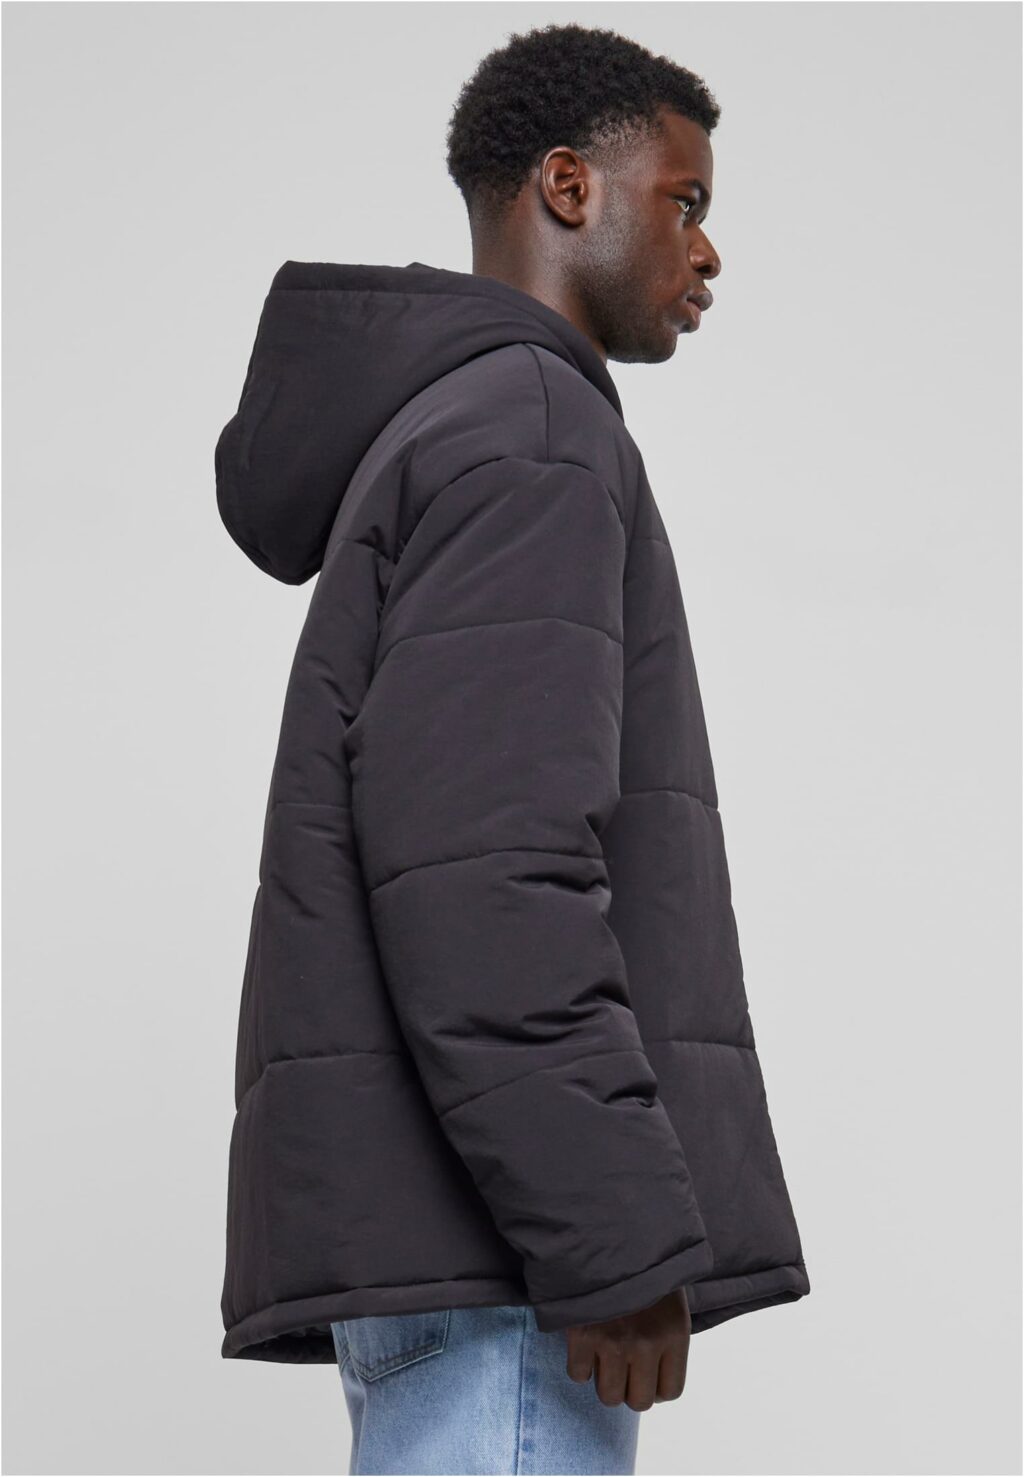 Urban Classics Hooded Block Puffer Jacket black TB6385